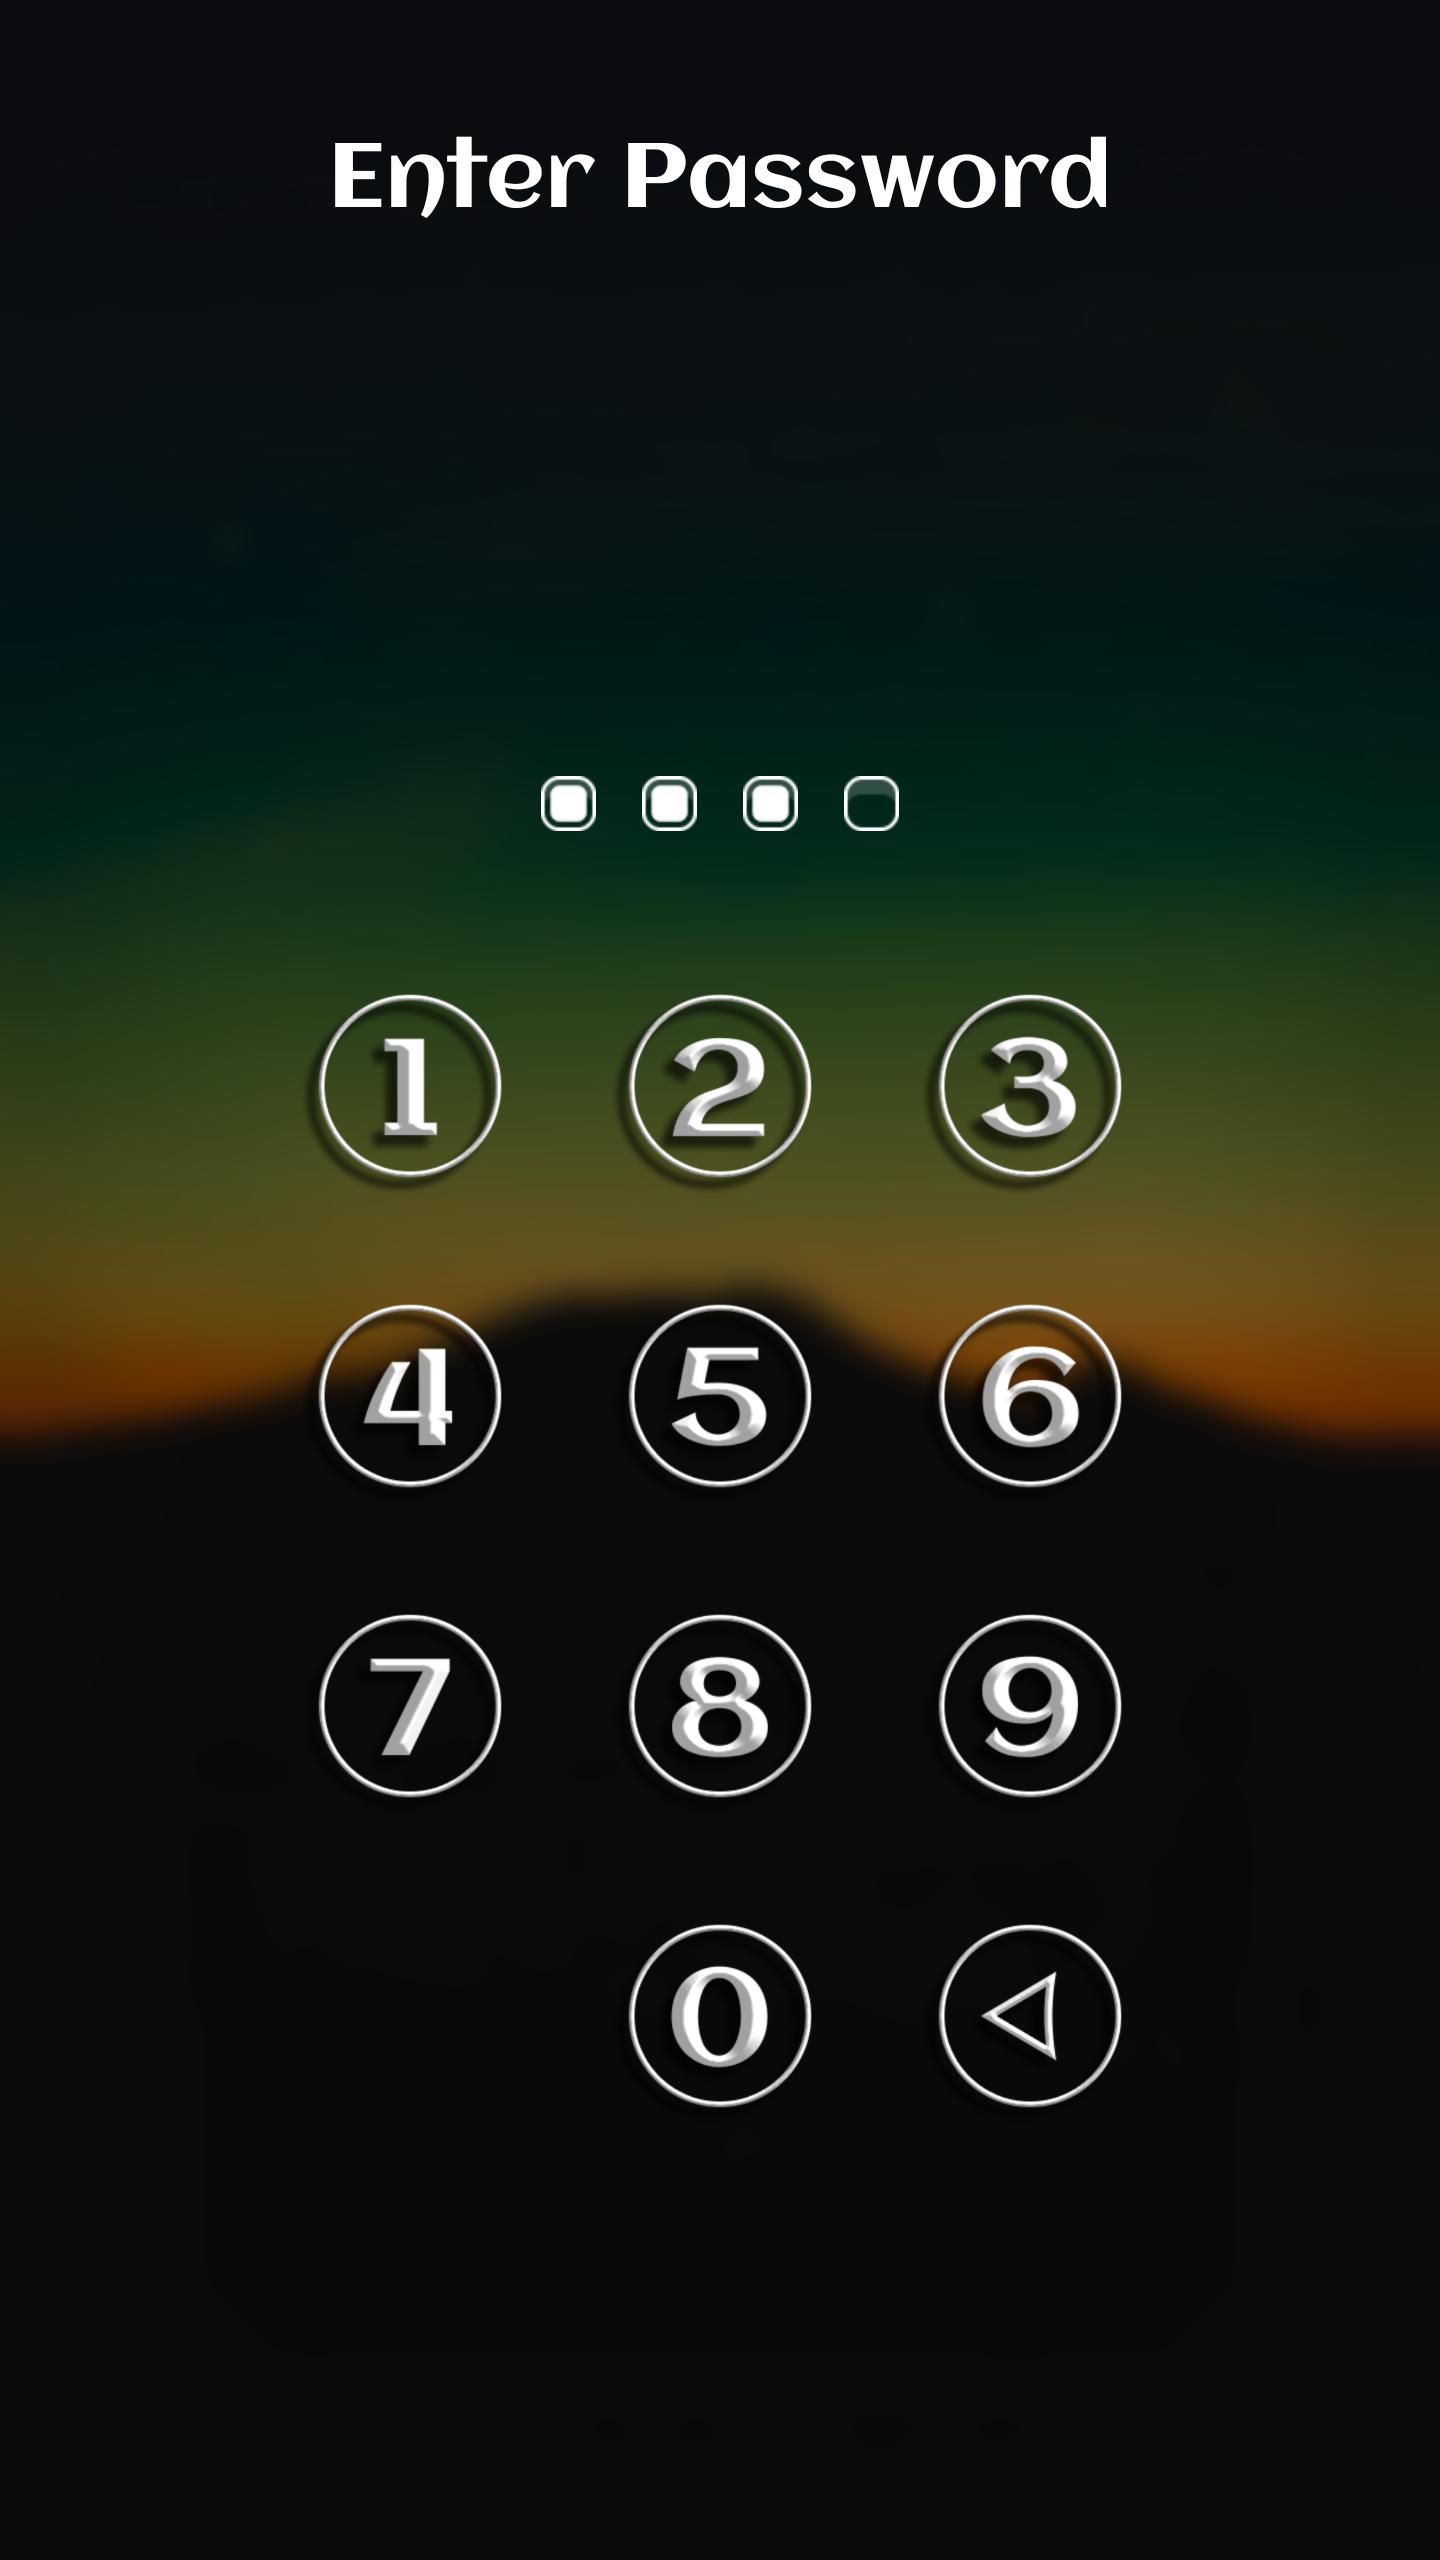 Картинки блокировка для телефона. Экран блокировки. Экран блокировки телефона. Экран блокировки цифры. Значок блокировки телефона.